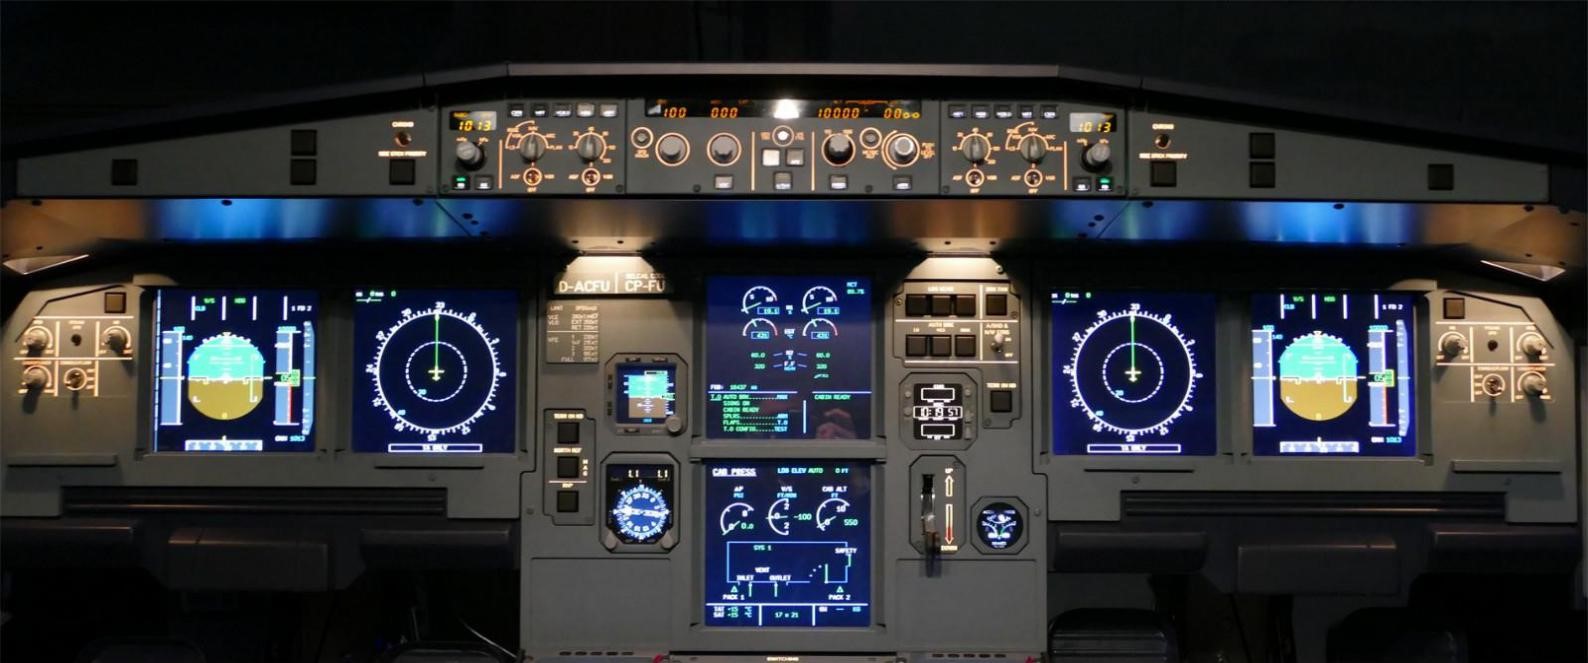 飞行者联盟空客A320模拟舱 整舱产品发布！-2706 